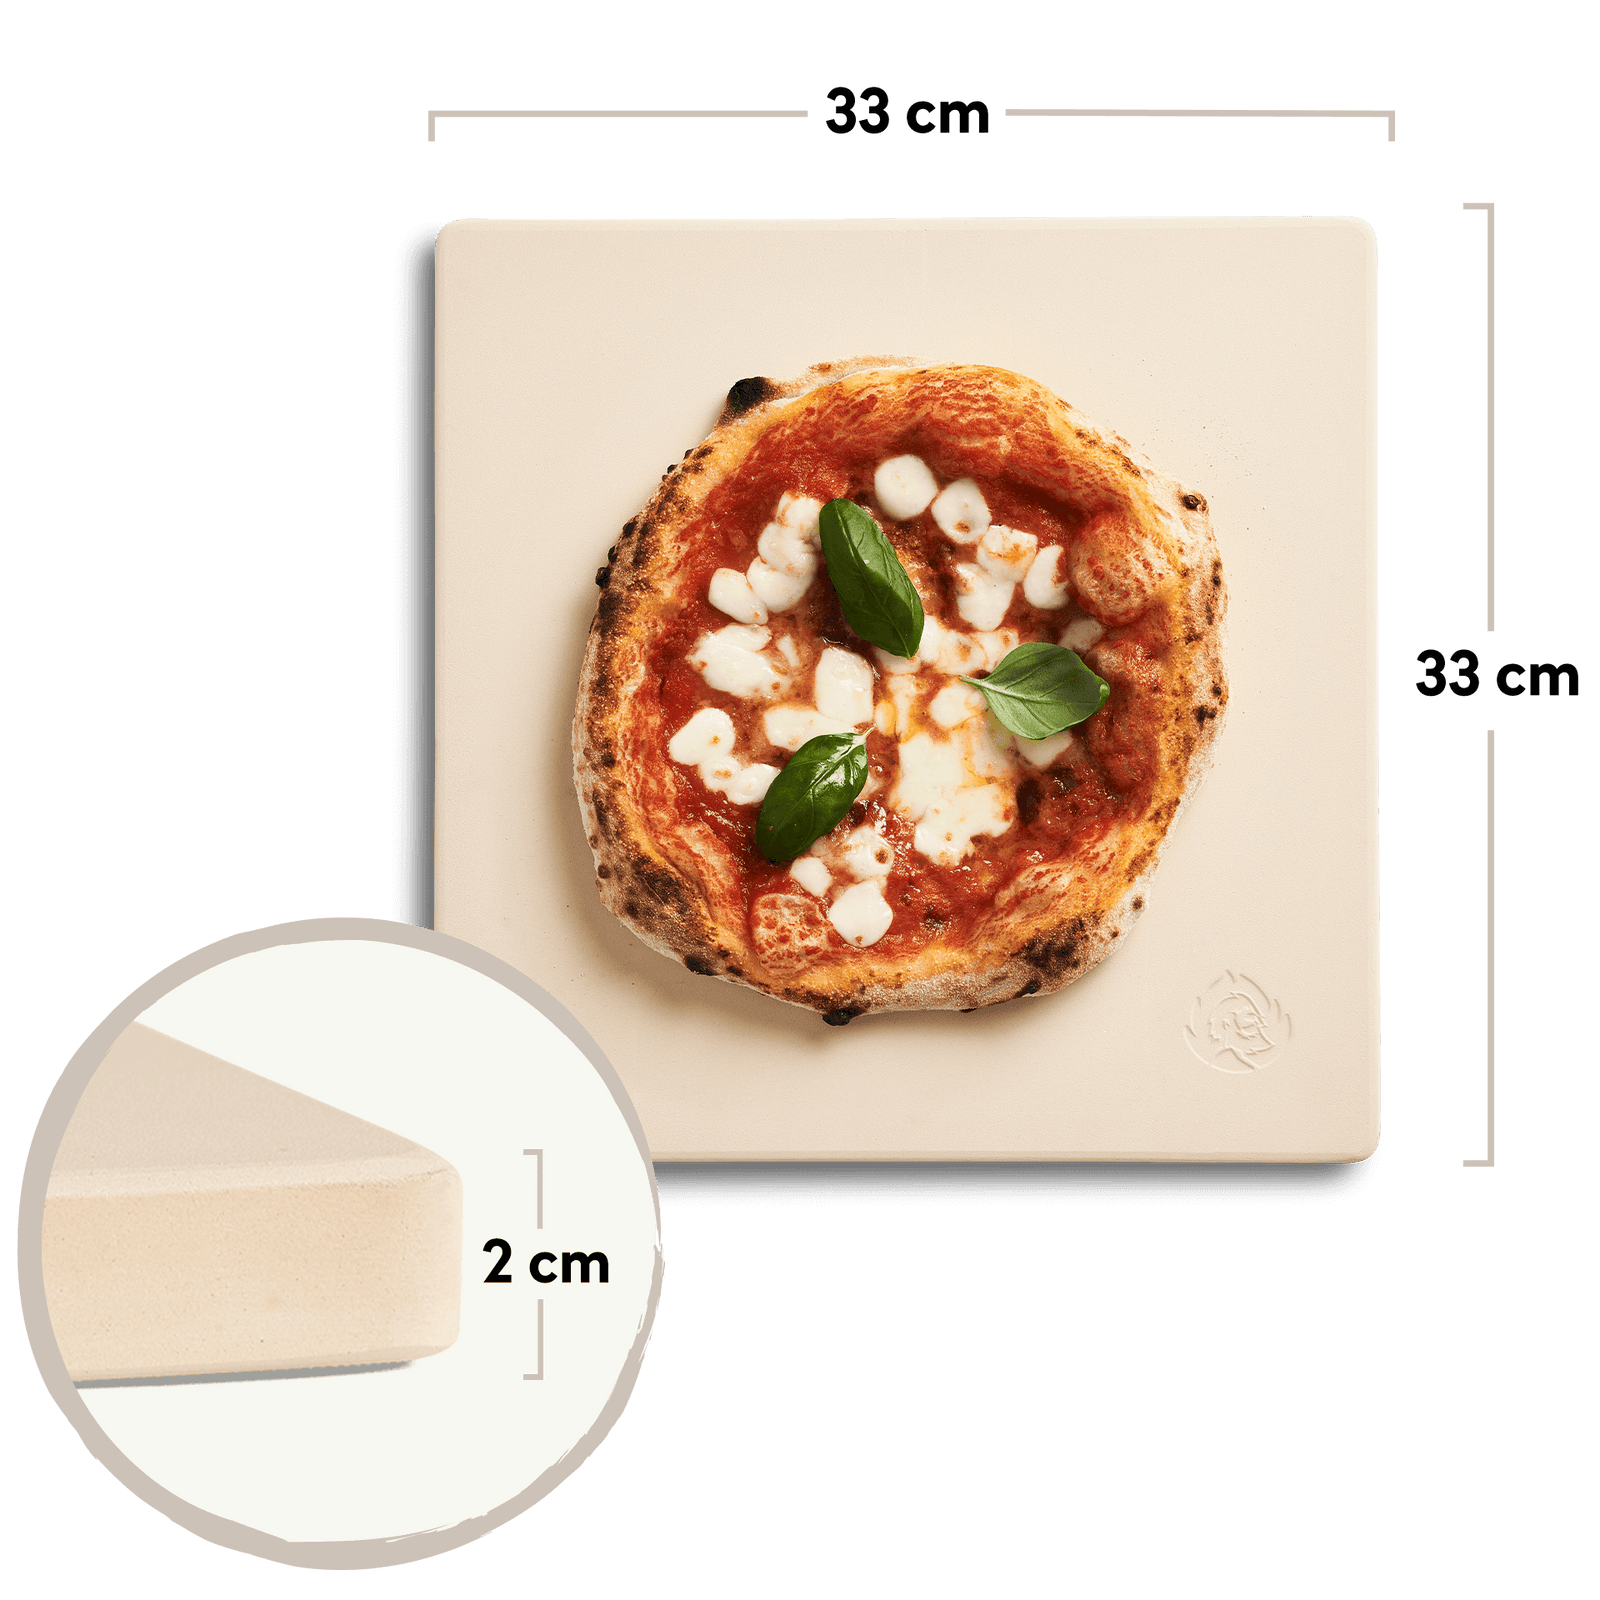 Cordierit Pizzastein mit 33 x 33 cm bei 2 cm Stärke